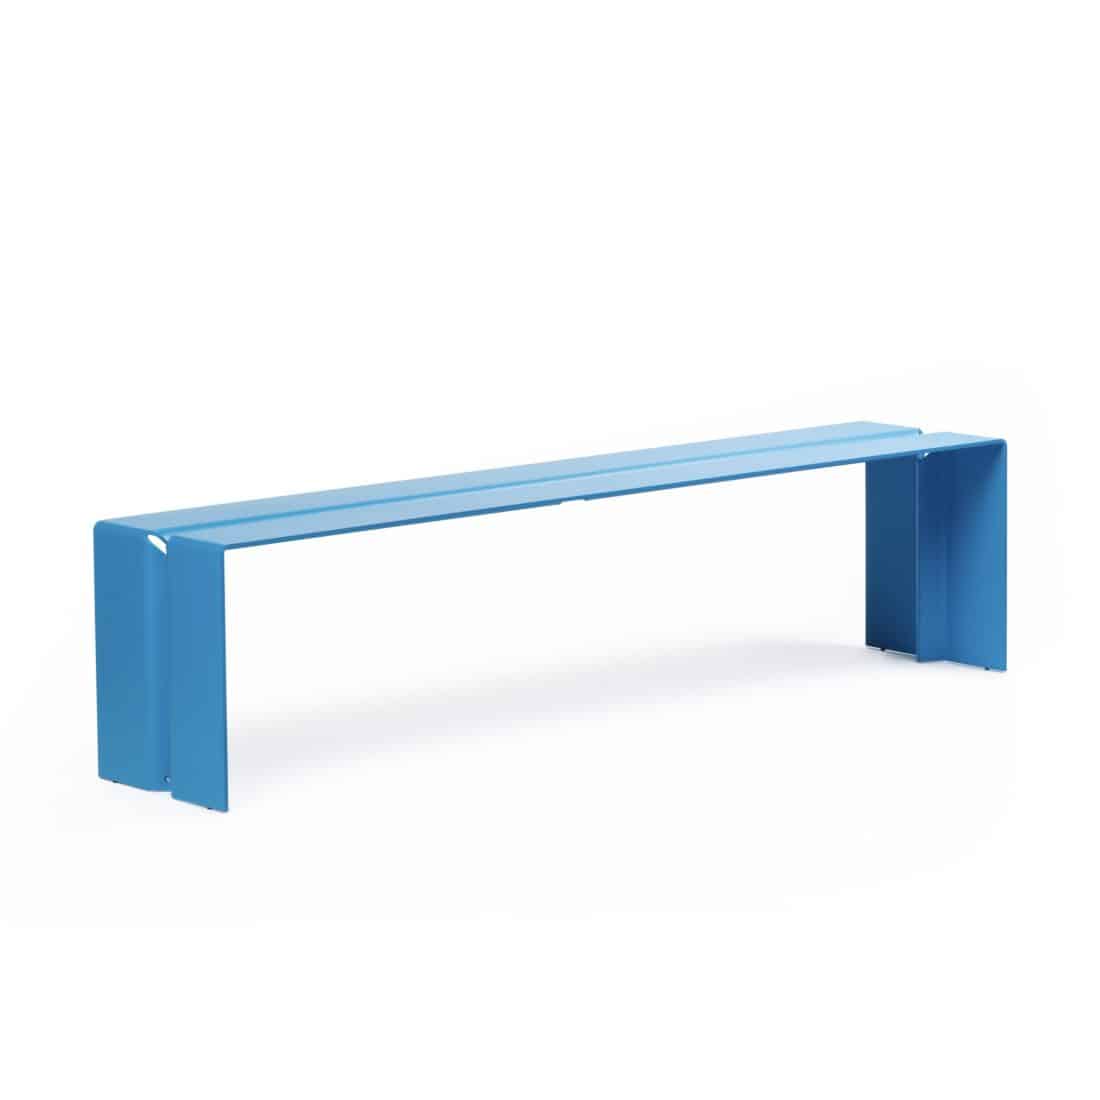 The Bench Wünder light blue